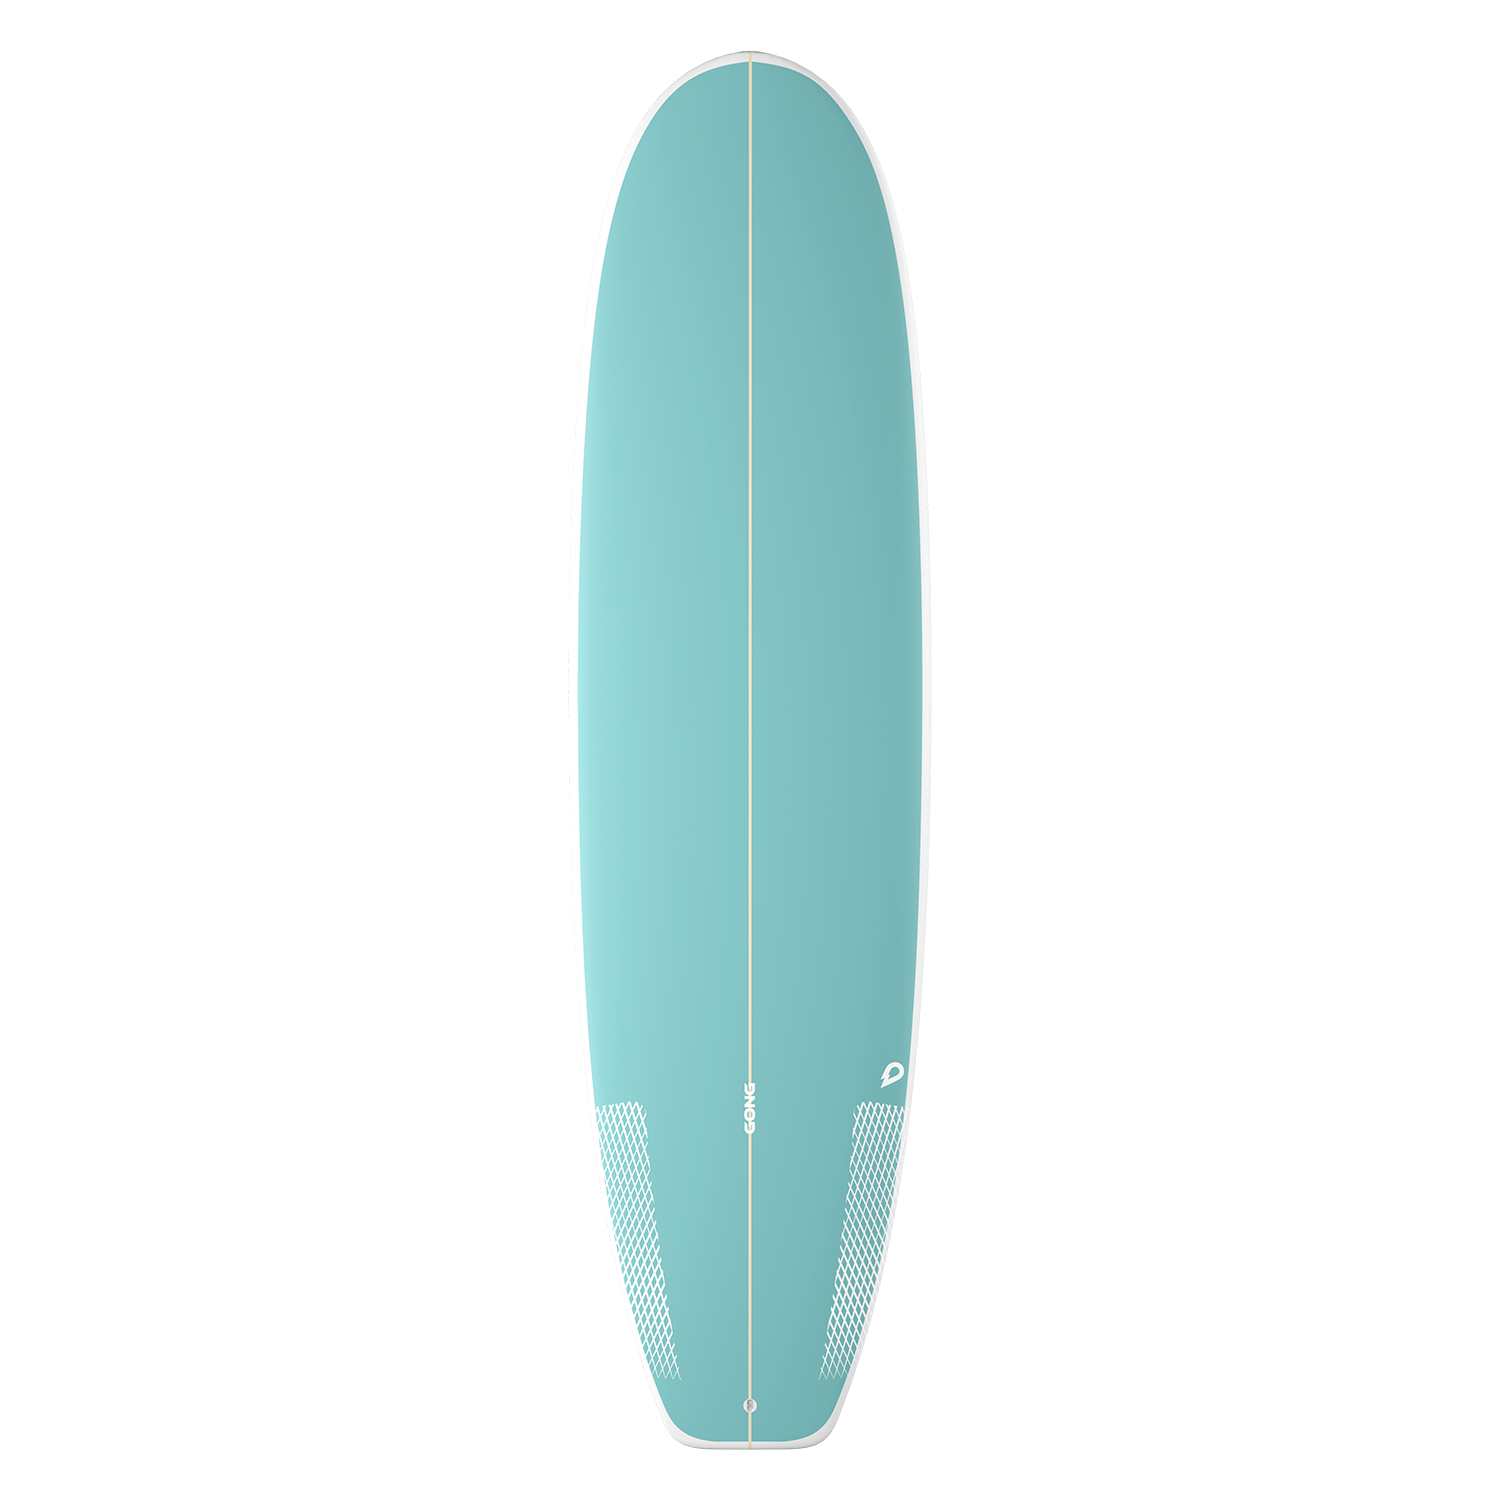 GONG | Surf Gumball PU